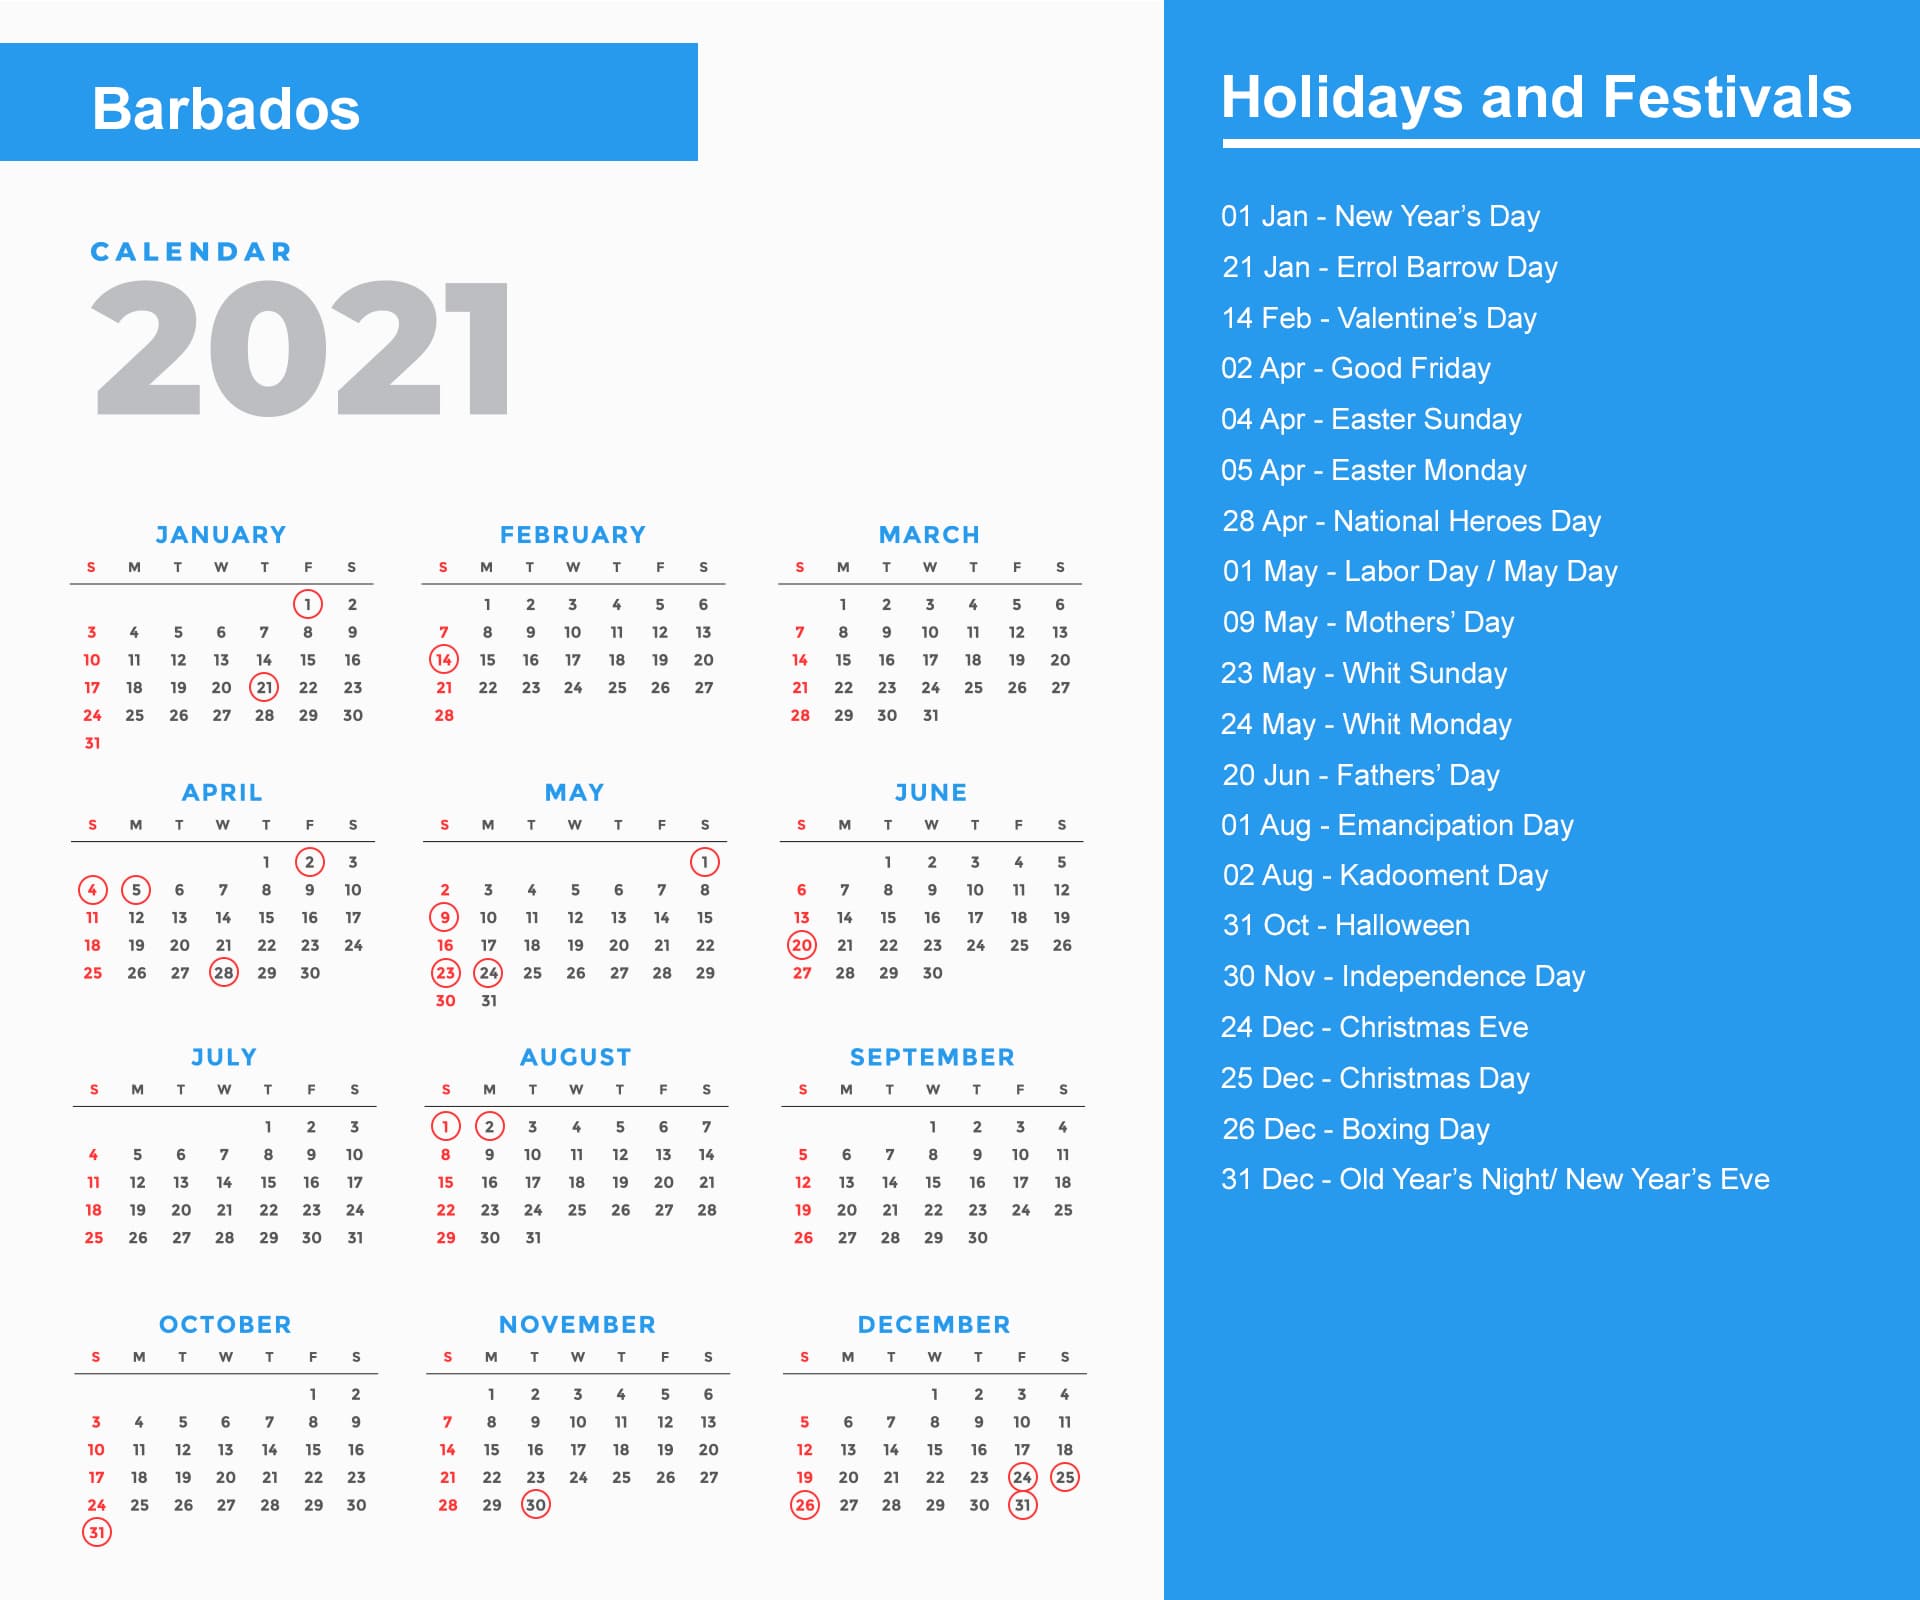 Barbados Holidays Calendar 2021